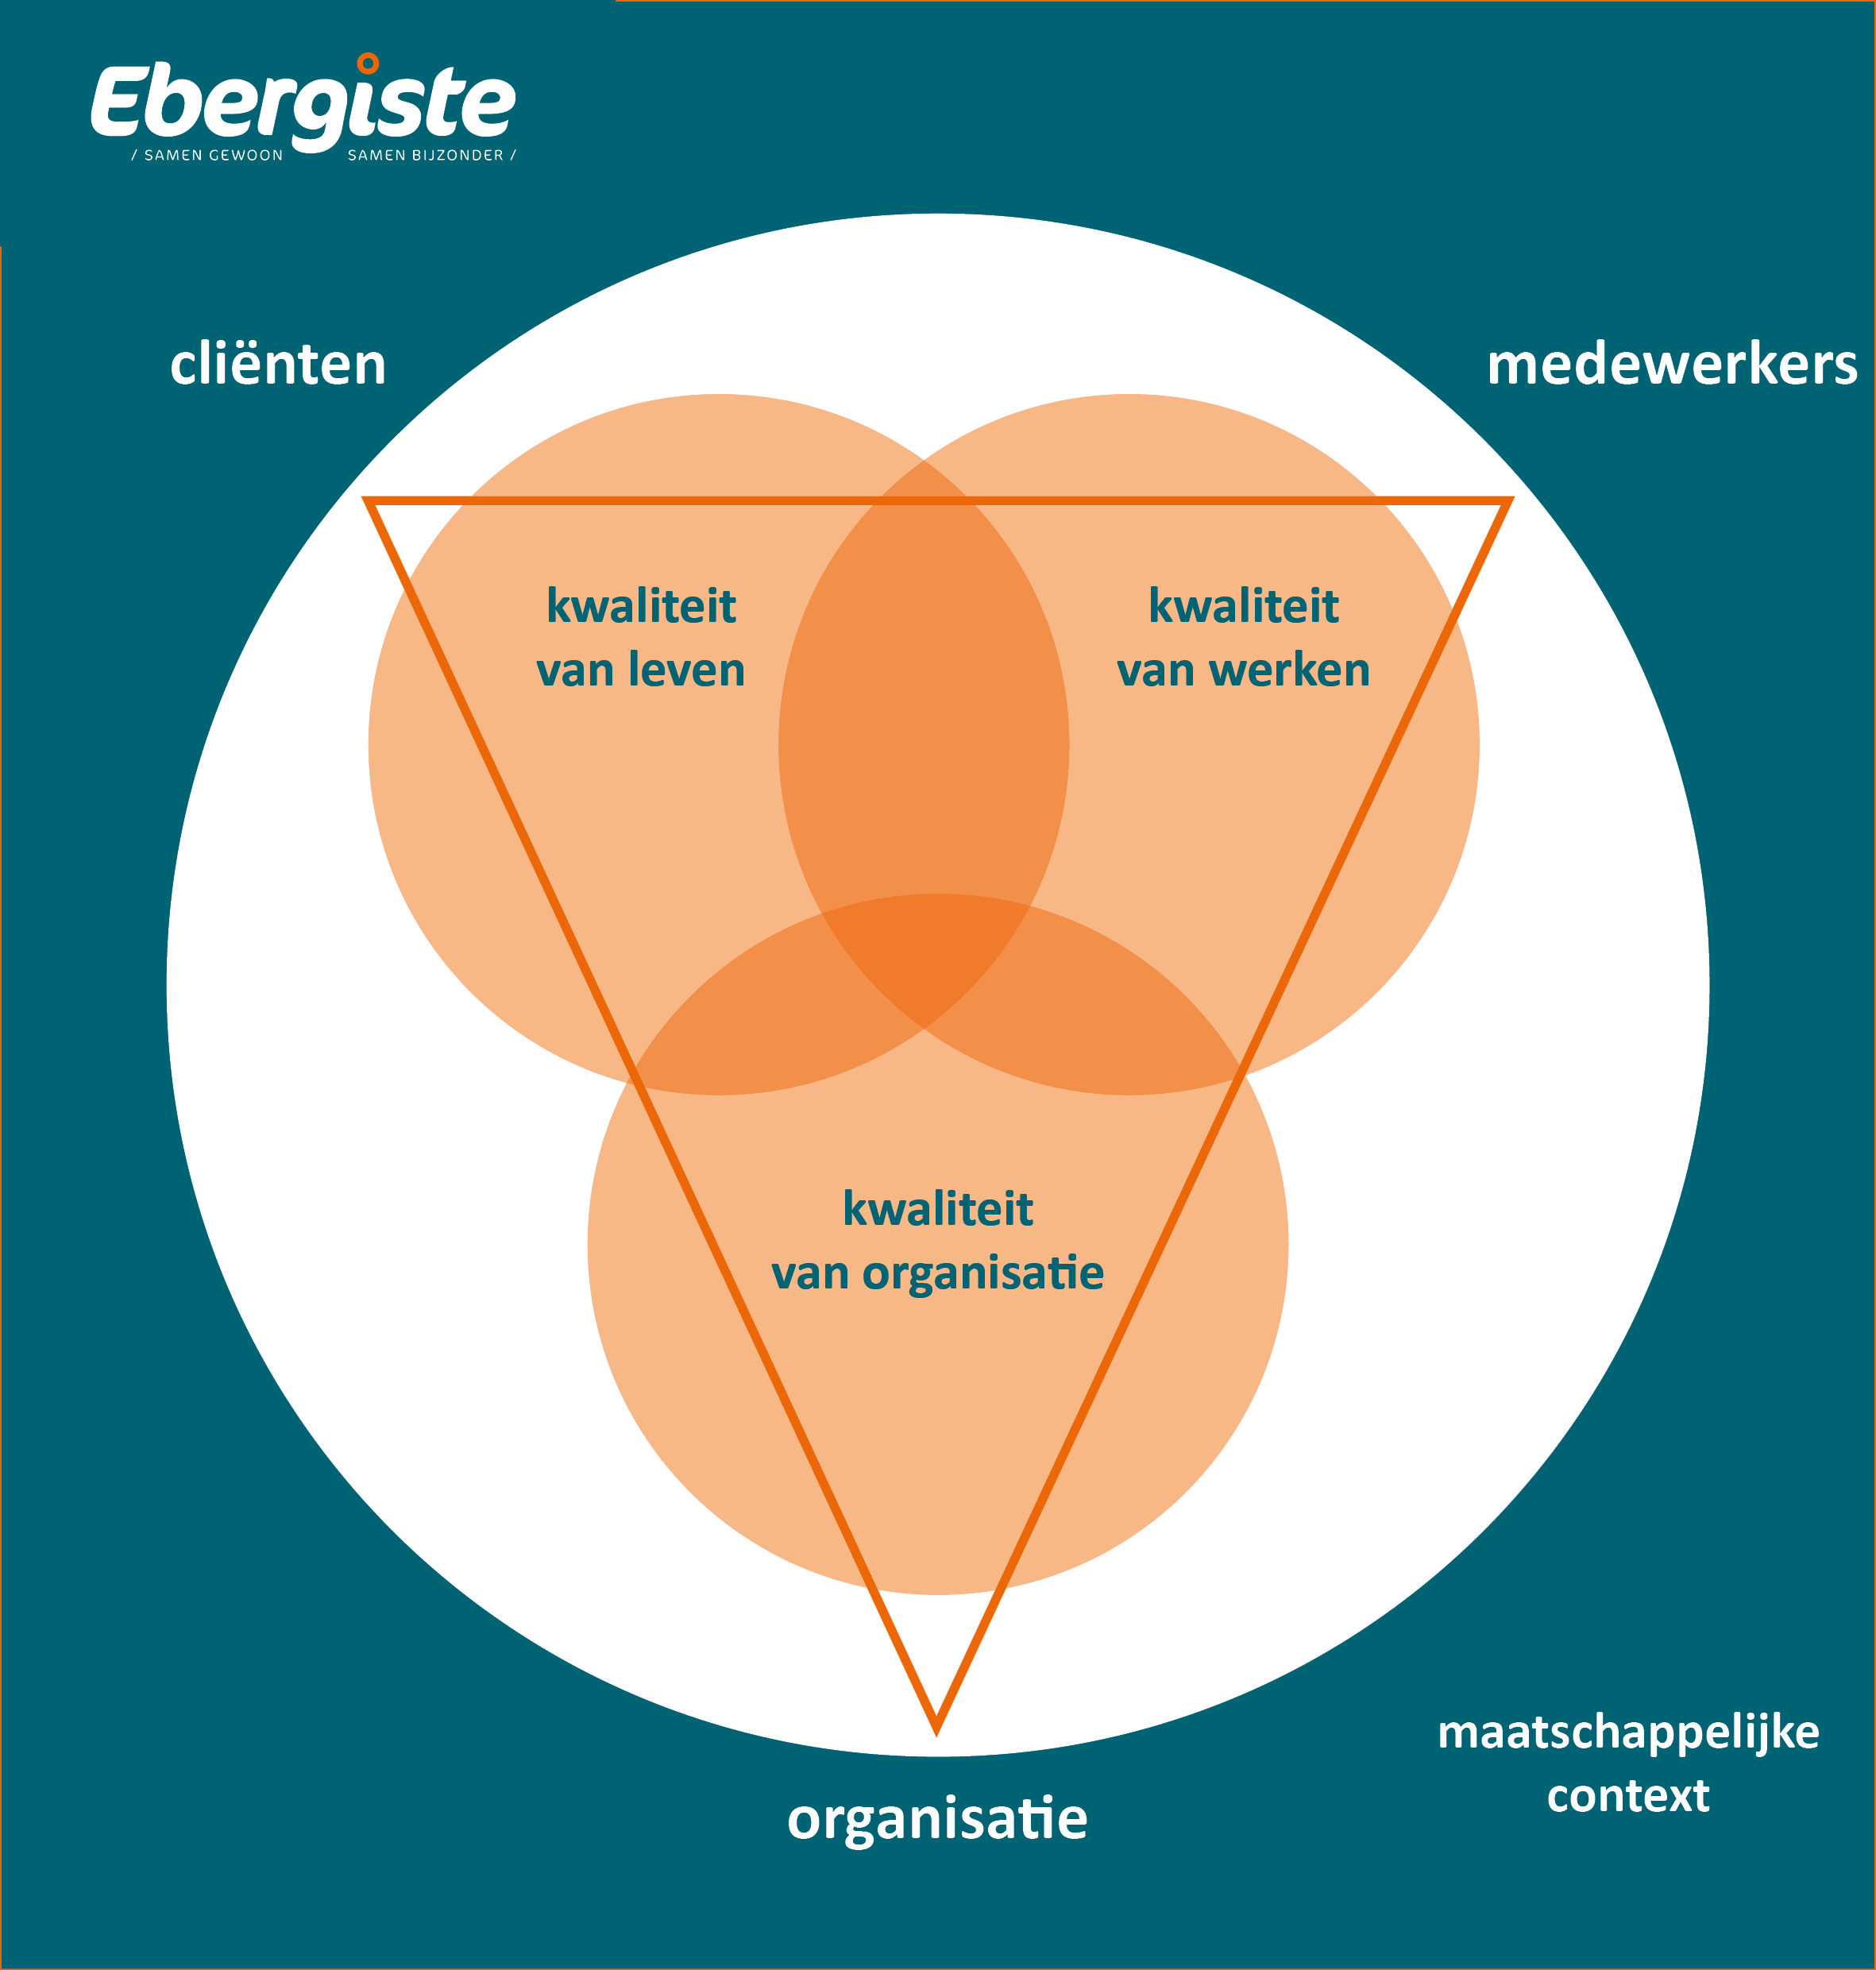 Tekening van de kwaliteitsdriehoek van Ebergiste. De uithoeken van de driehoek staan voor cliënten, medewerkers en organisatie. Die vertaald worden in de drie strategische doelstellingen: kwaliteit van leven, kwaliteit van werken en kwaliteit van organisatie. Dit alles binnen een maatschappelijke context.